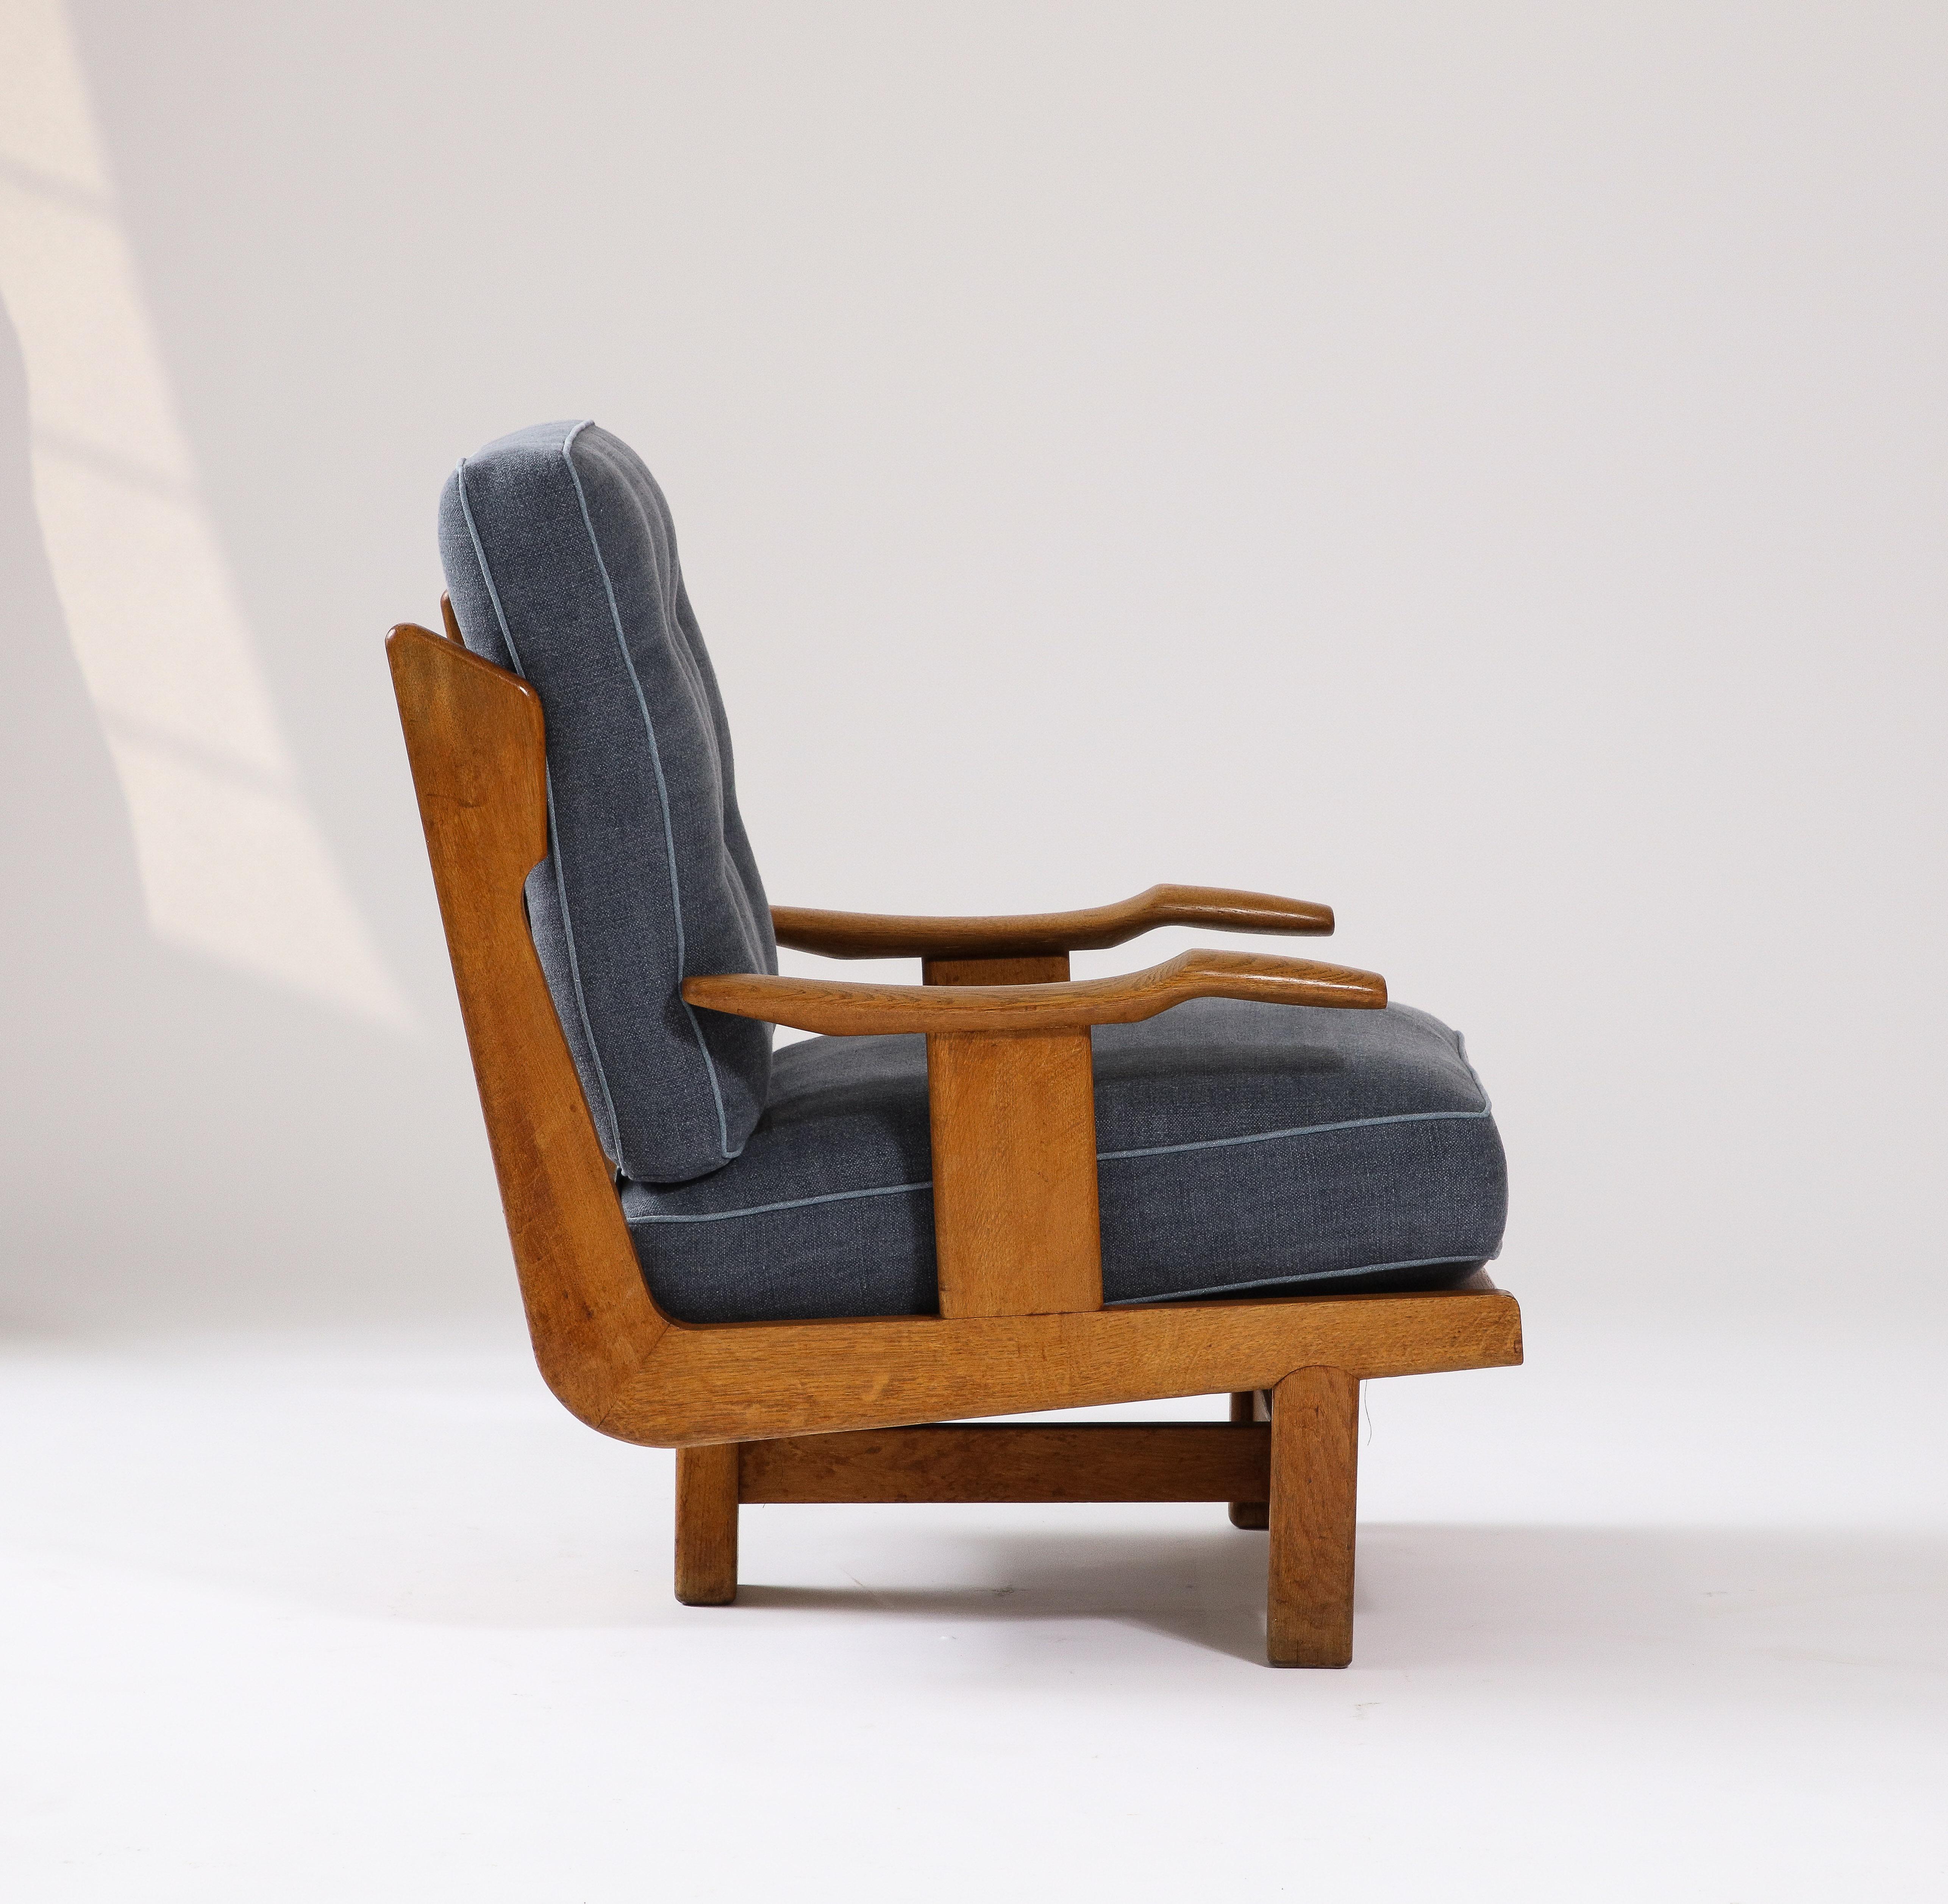 Deux disponibles ; prix individuels. 

Chaise longue sculpturale de Guillerme et Chambron. Cette chaise est incroyablement confortable, avec de nouveaux coussins rembourrés en lin marine lavé avec des passepoils et des boutons contrastés bleu-gris